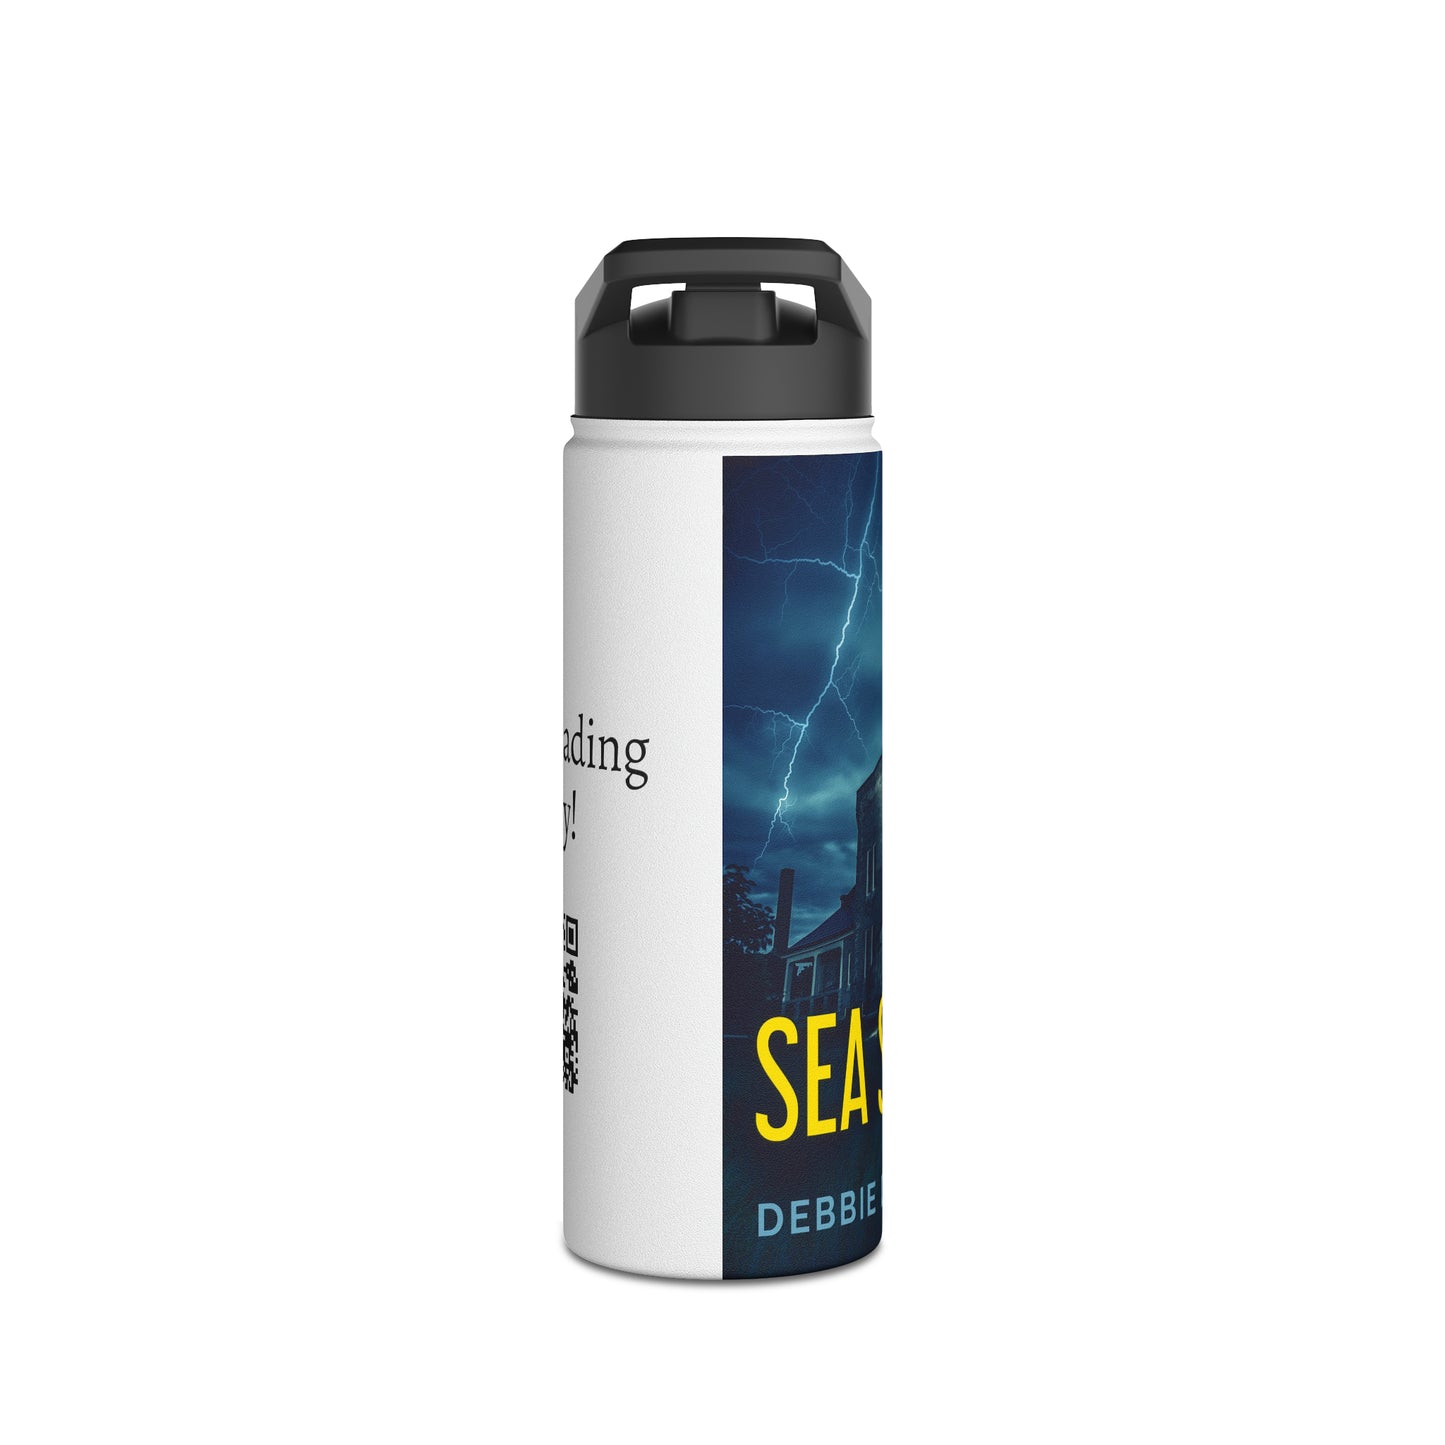 Sea Scope - Stainless Steel Water Bottle